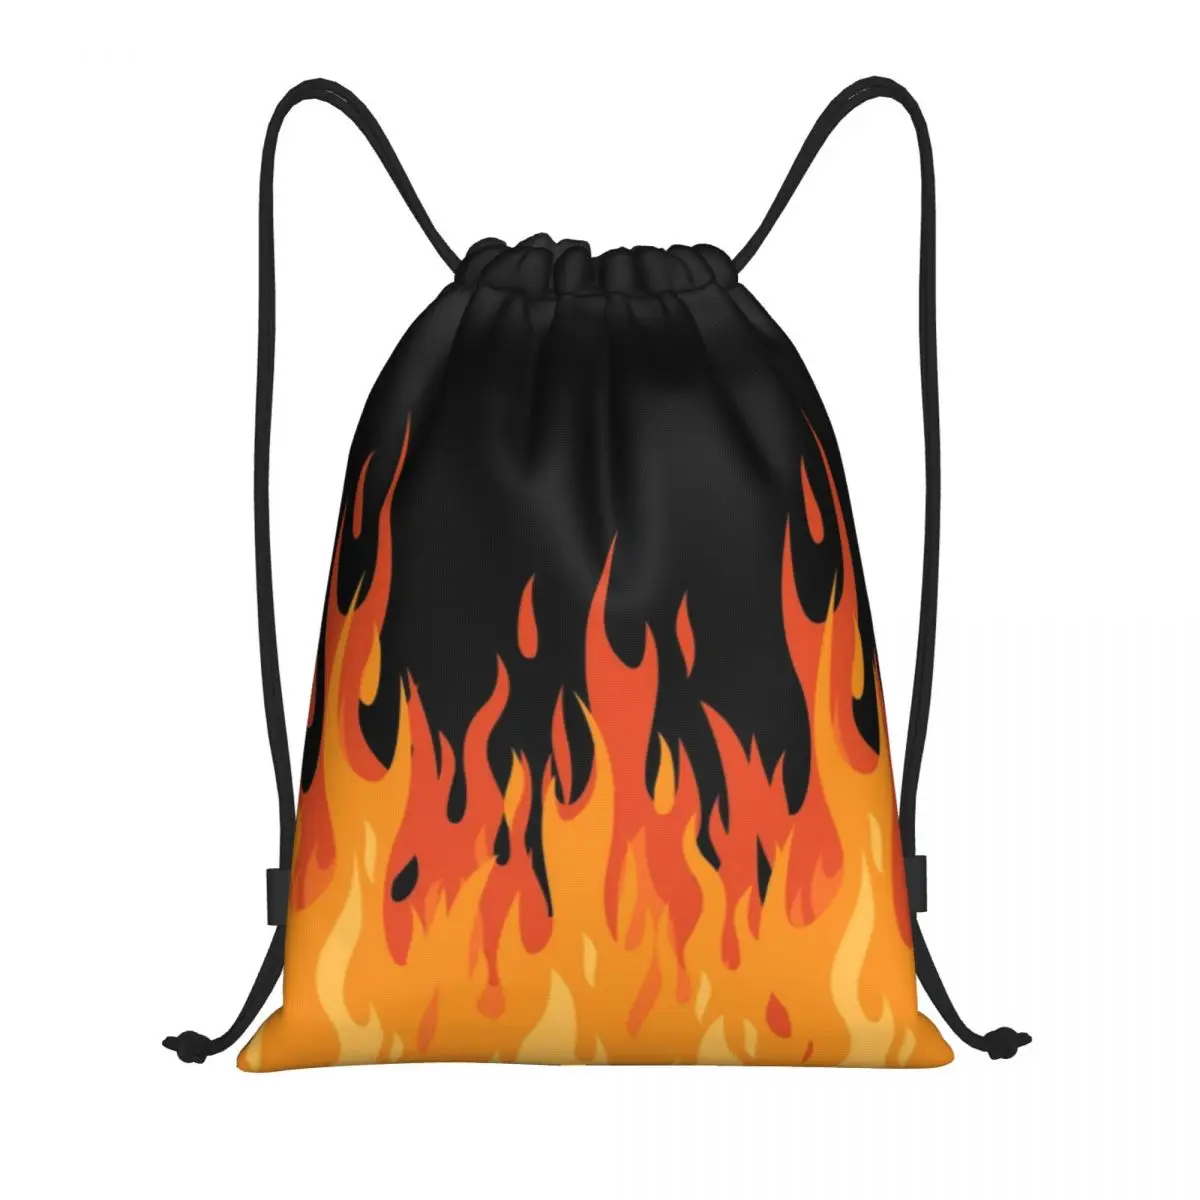 Custom Big Fire Orange Flames Drawstring Bag for Training Yoga Backpacks Women Men Vintage Burning Flame Sports Gym Sackpack